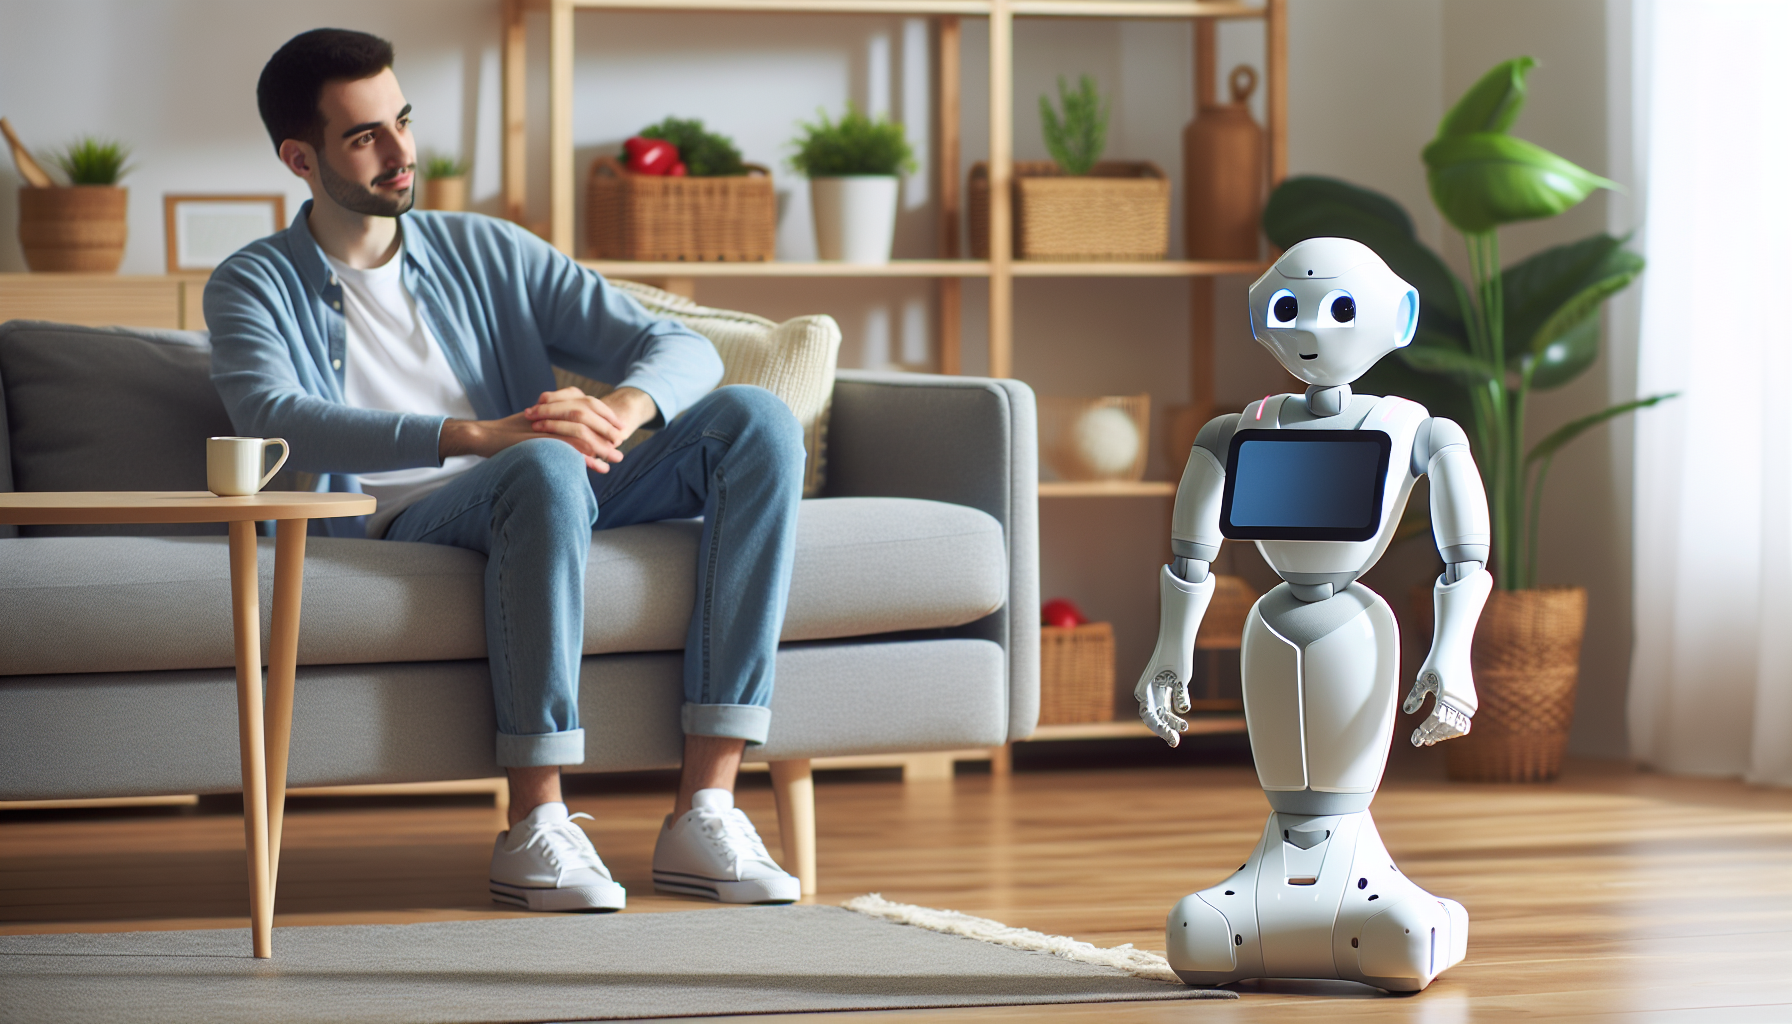 scopri tutto su Pepper, il robot sociale di Softbank: le sue caratteristiche, il suo utilizzo e il suo impatto sulla società.